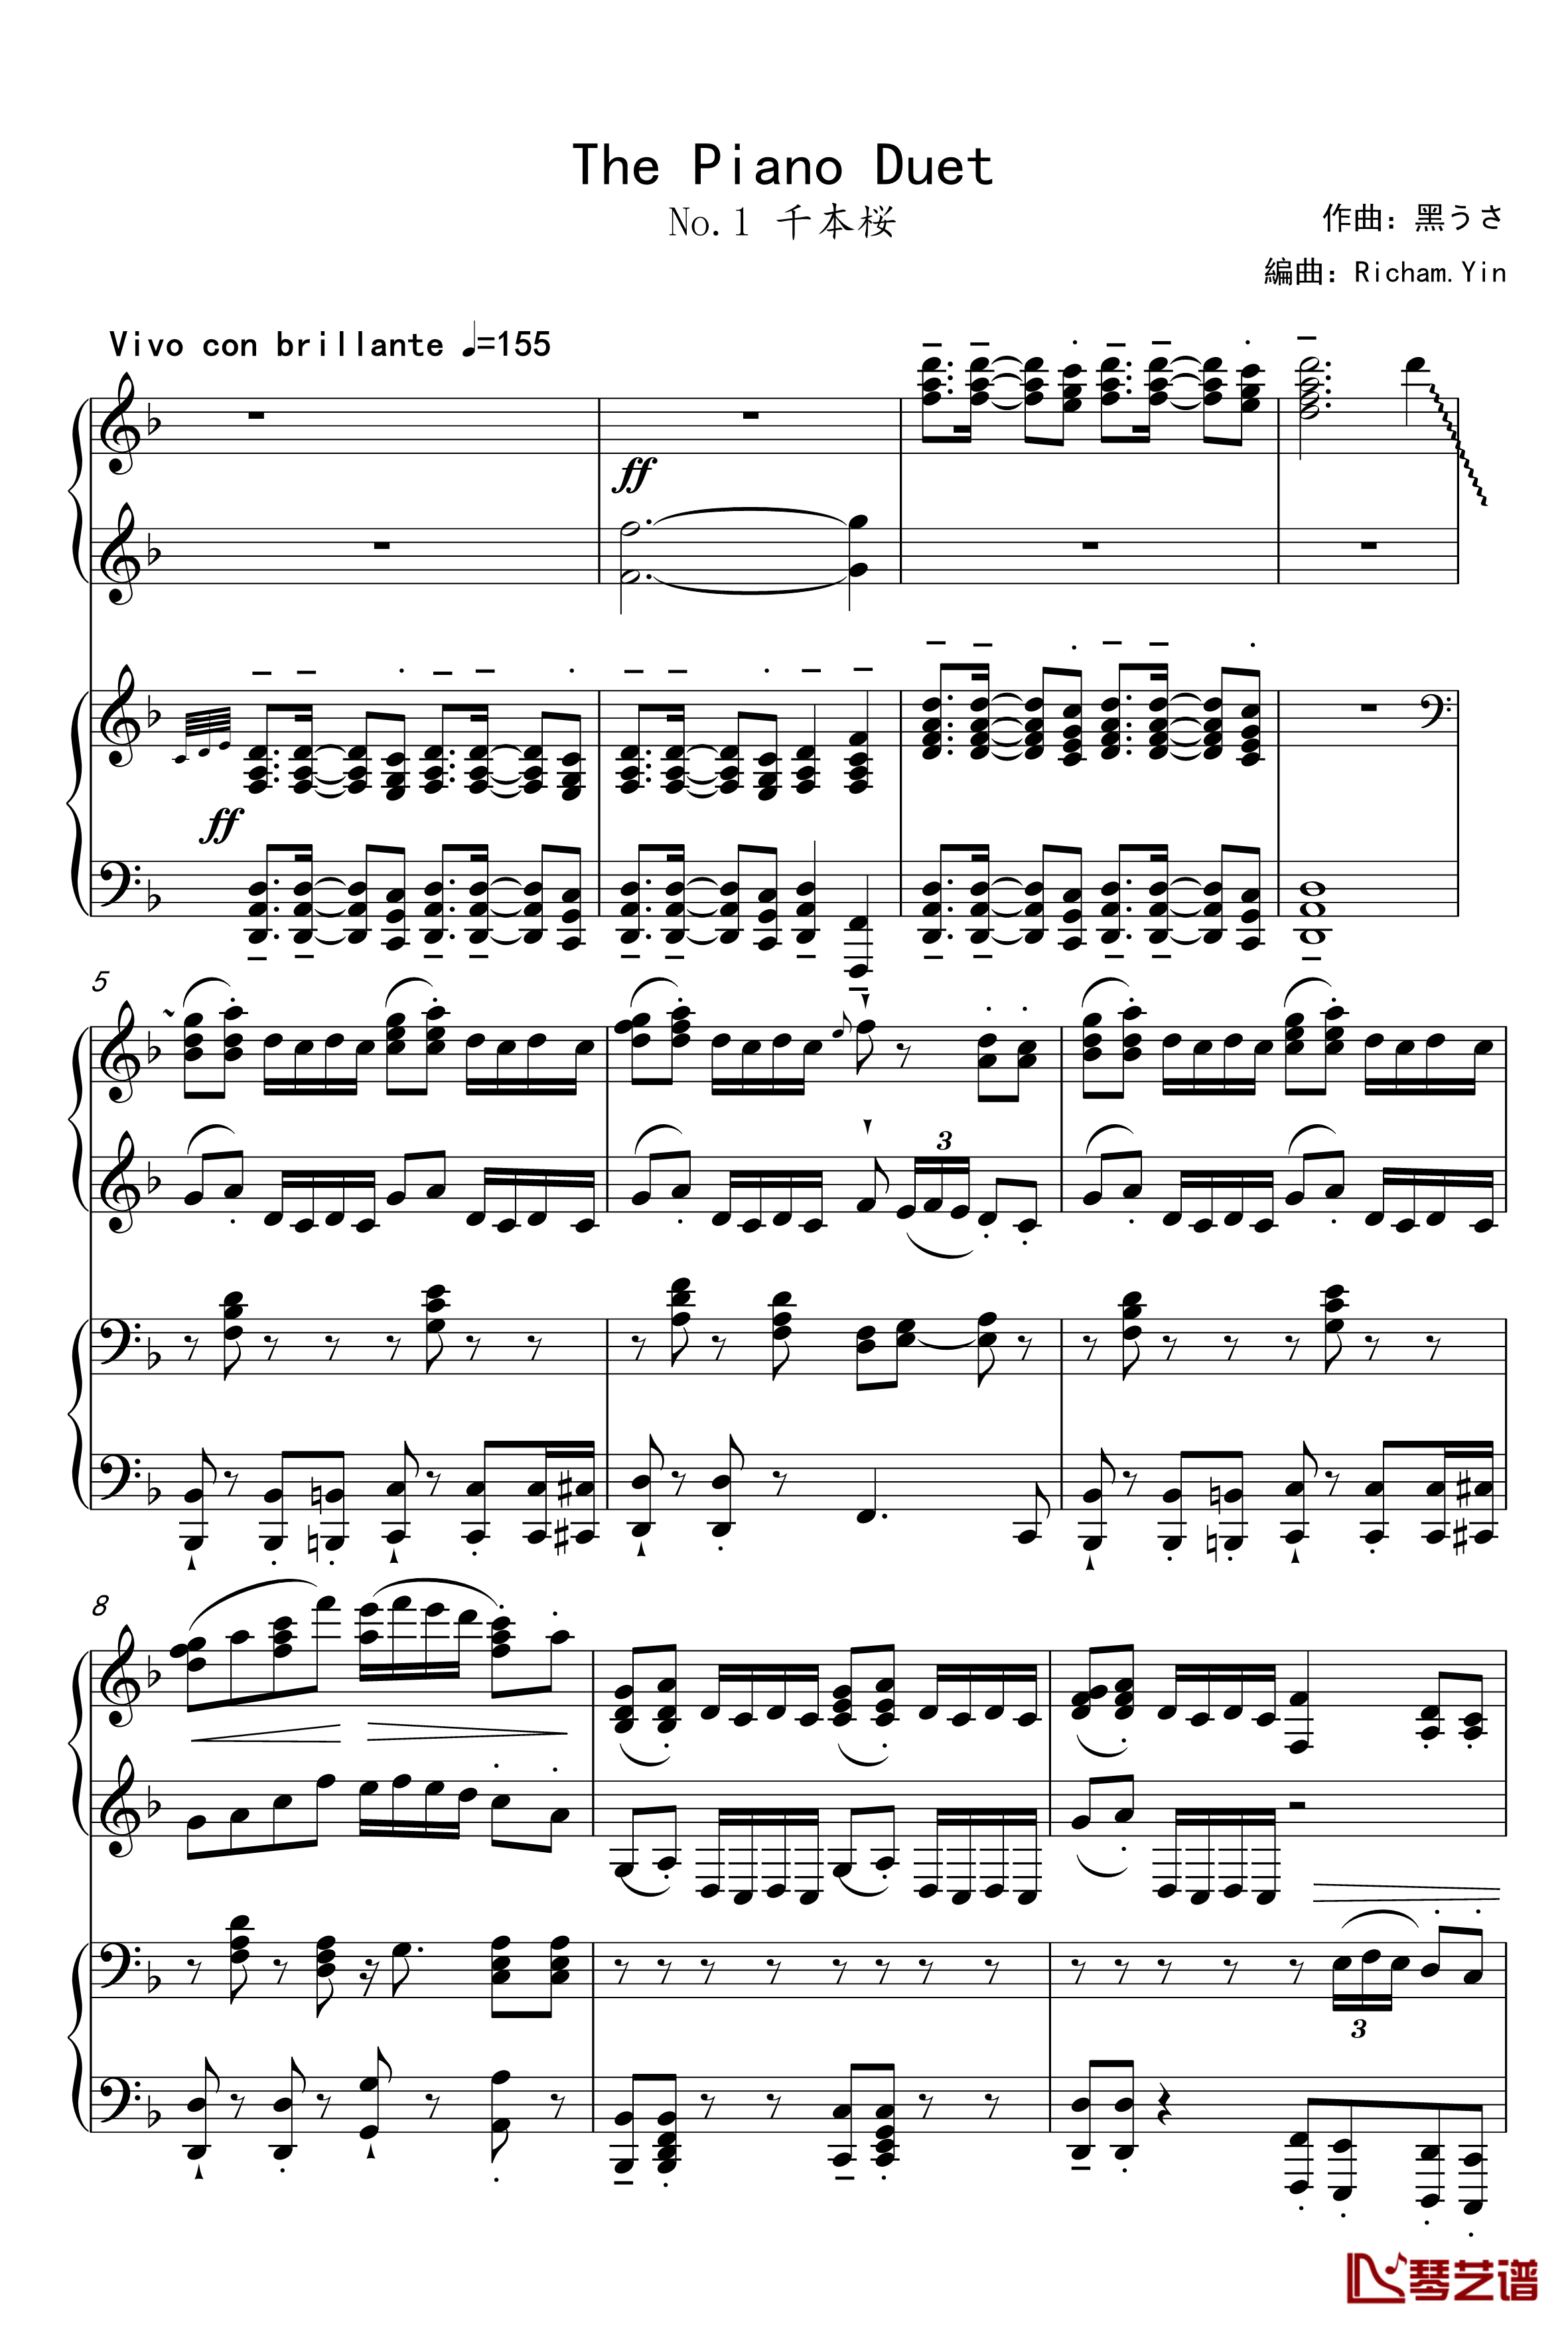 千本桜钢琴谱-Piano Duet by Richam.Yin-初音未来1